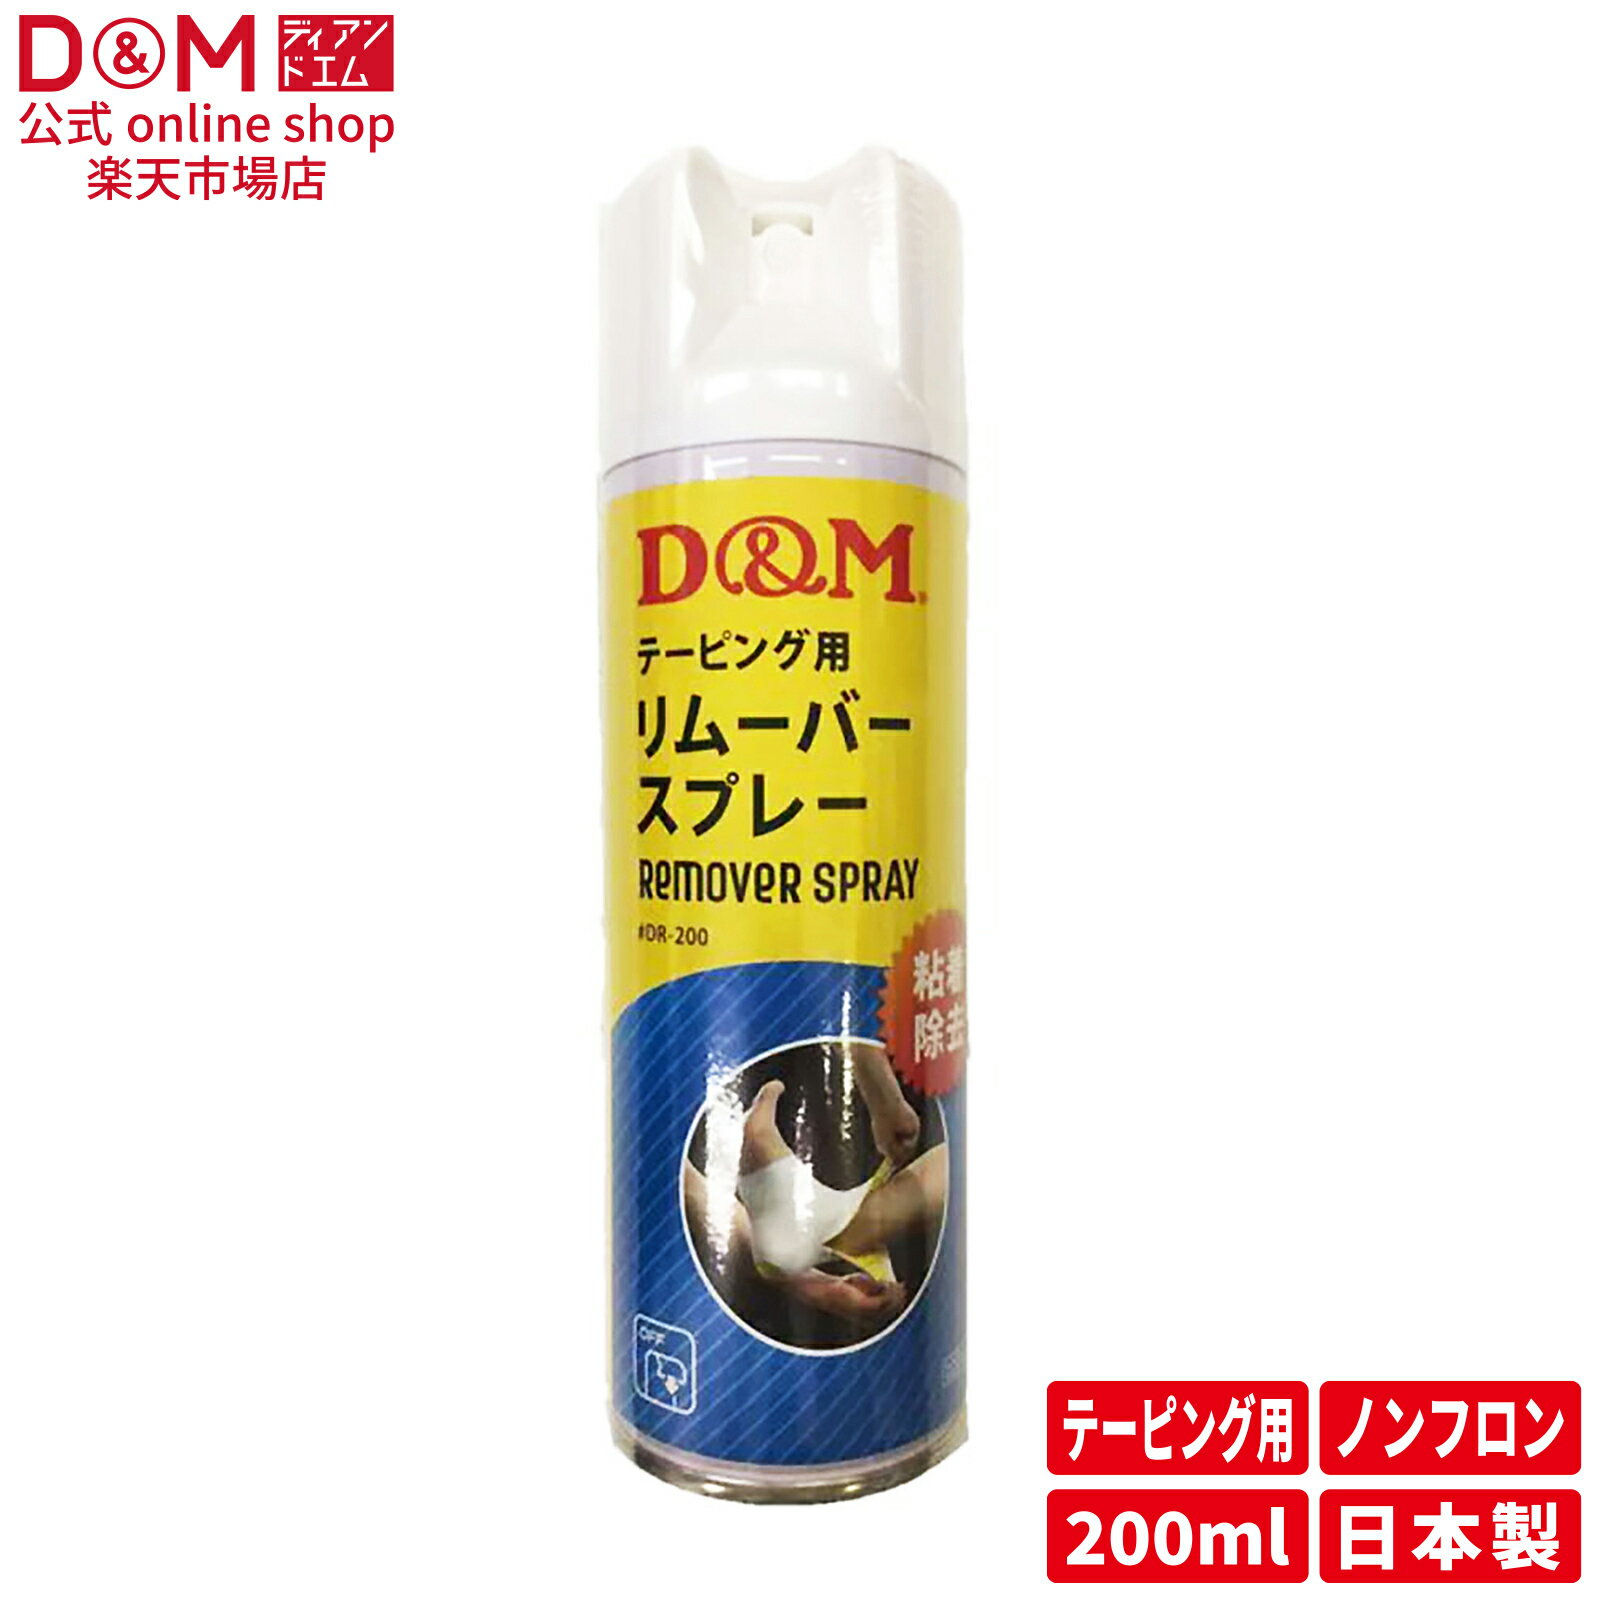 D&M 公式 日本製 リムーバースプレー のり除去スプレー #DR-200 オールスポーツ ケア用 部活 サークル 社会人サークル テーピング 粘着除去スプレー ディーアンドエム